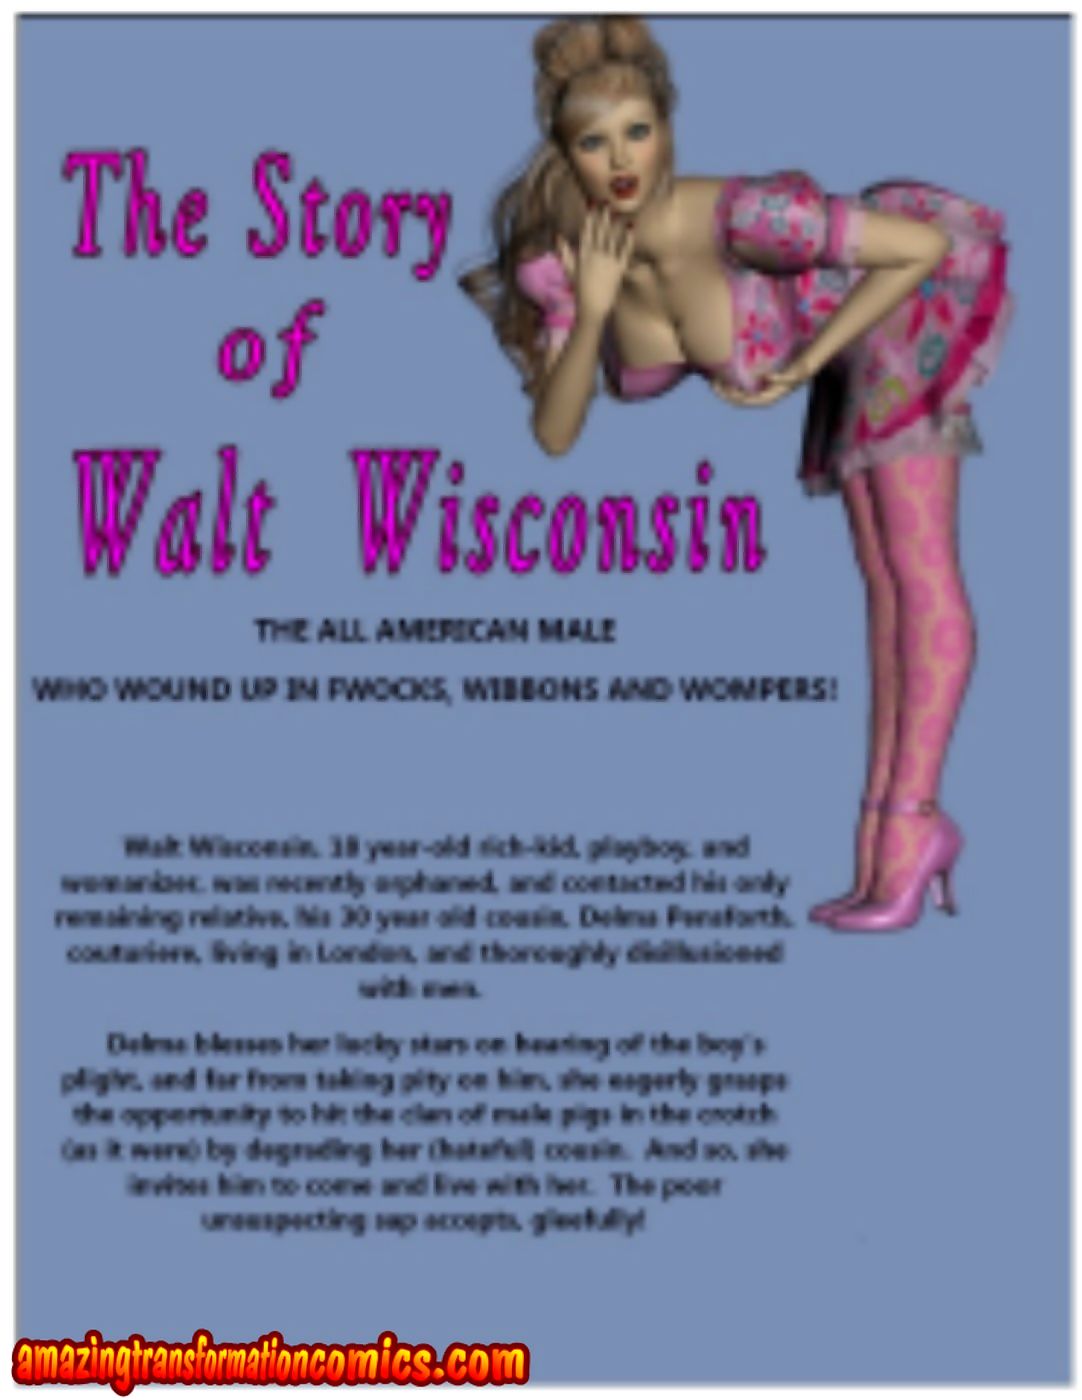 AmazingTransformation- Walt Wisconsin page 1